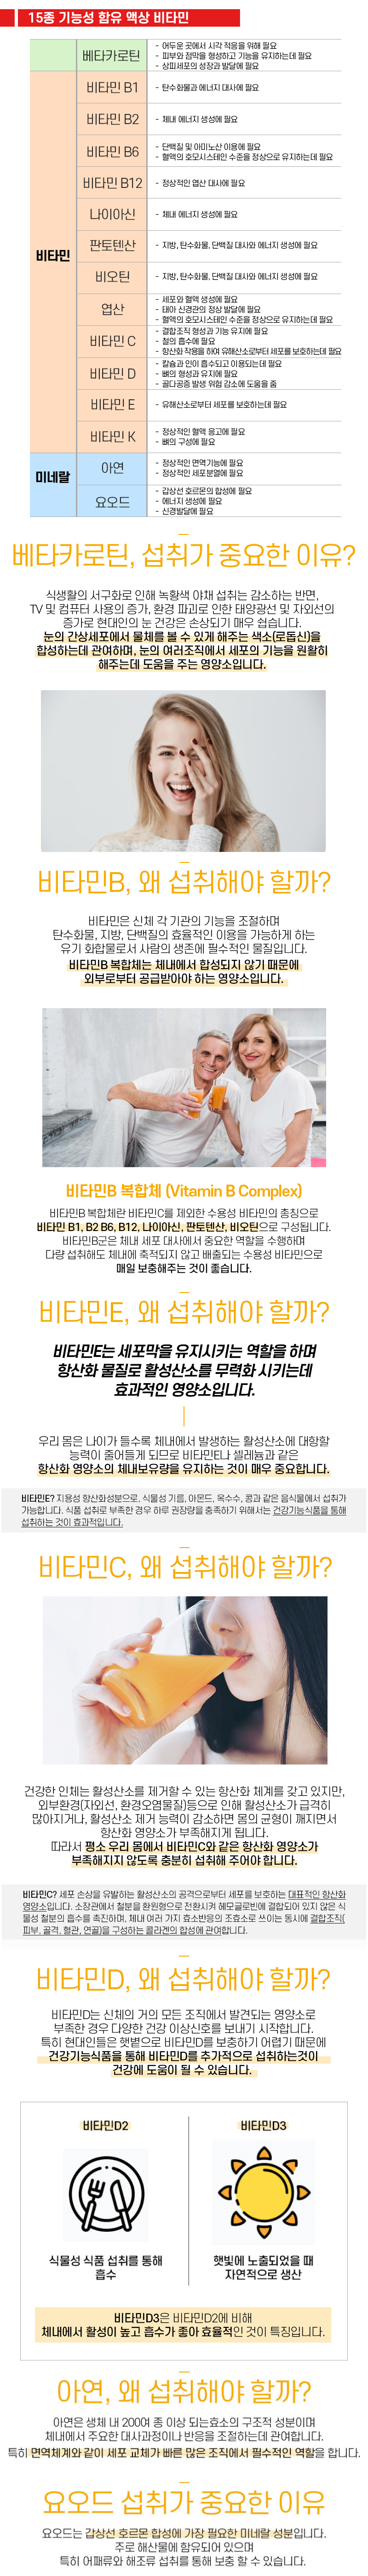 [6+3박스 특가] 로트벡쉔 이뮨샷 올인원 비타민 플러스 9BOX(90병) - 고함량 멀티 비타민 앰플